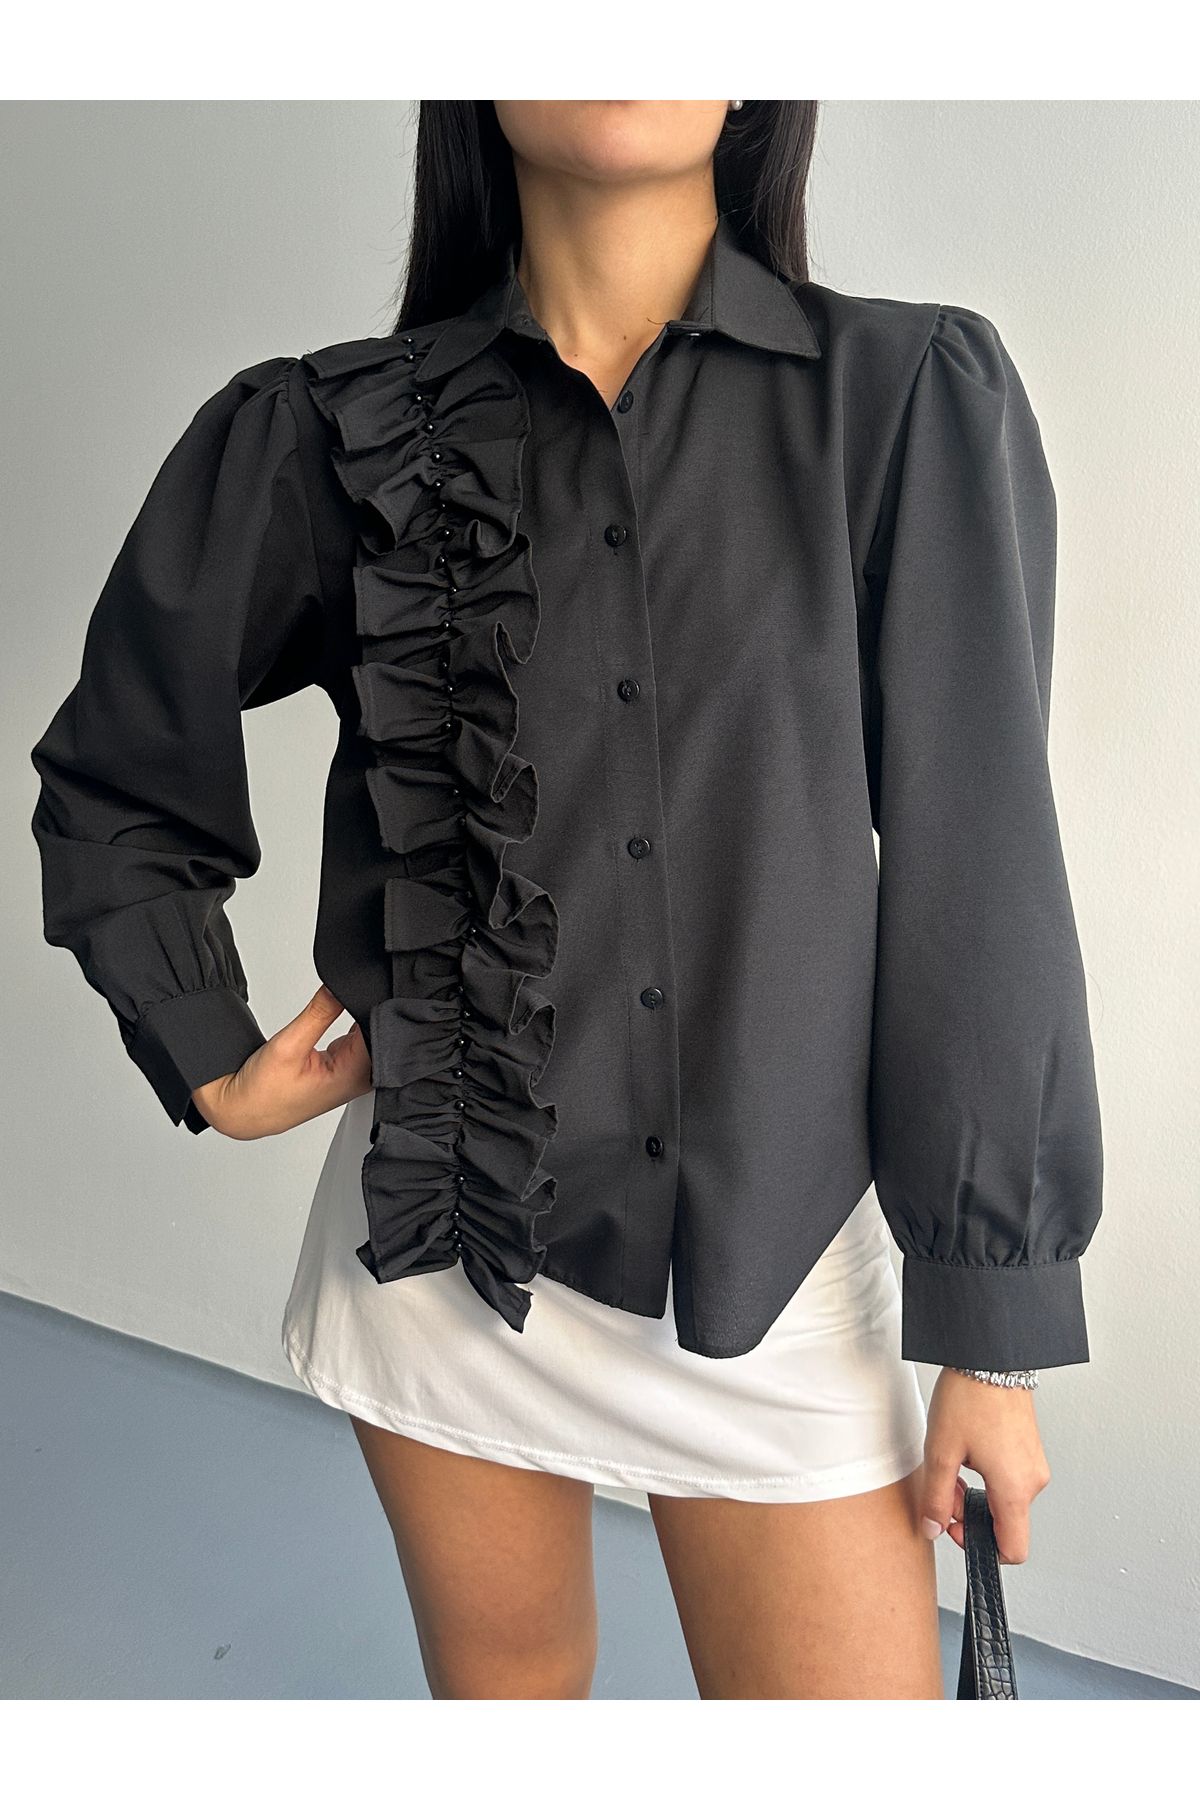 DuSiMoDa Kadın Siyah Gömlek Fırfırlı İnci İşlemeli Omuzları Pile Detaylı